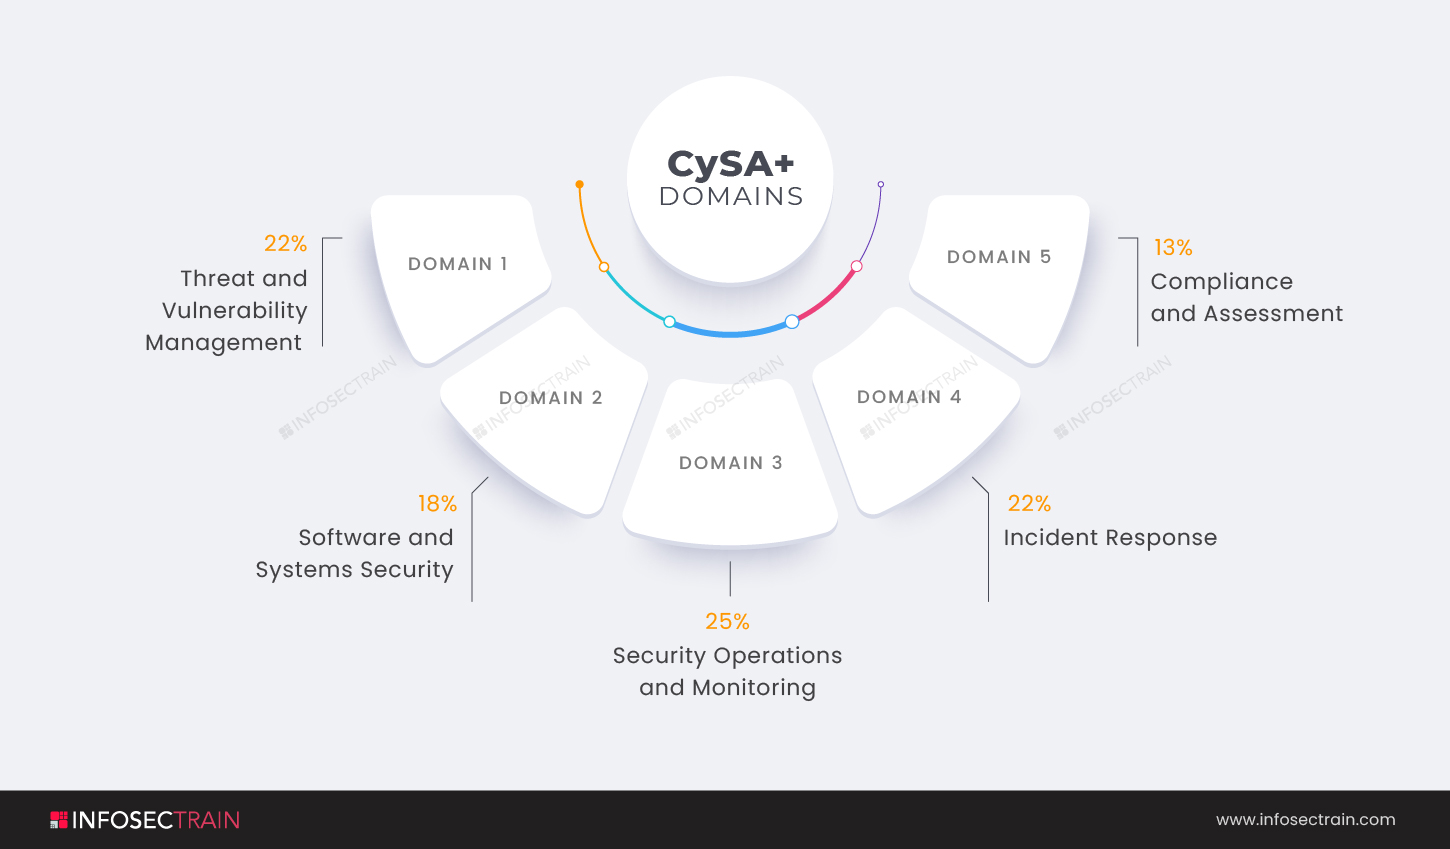 Domains of CySA+